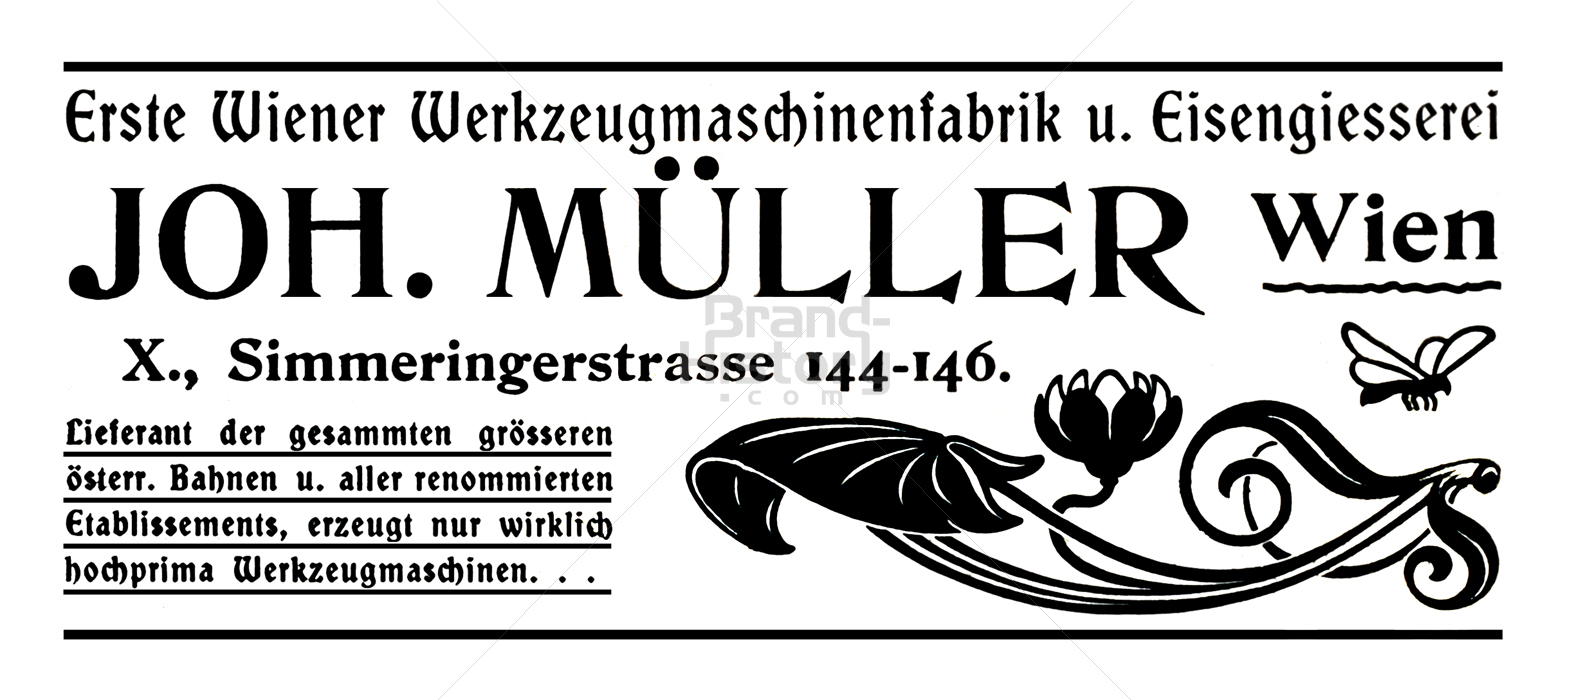 JOH. MÜLLER, Wien